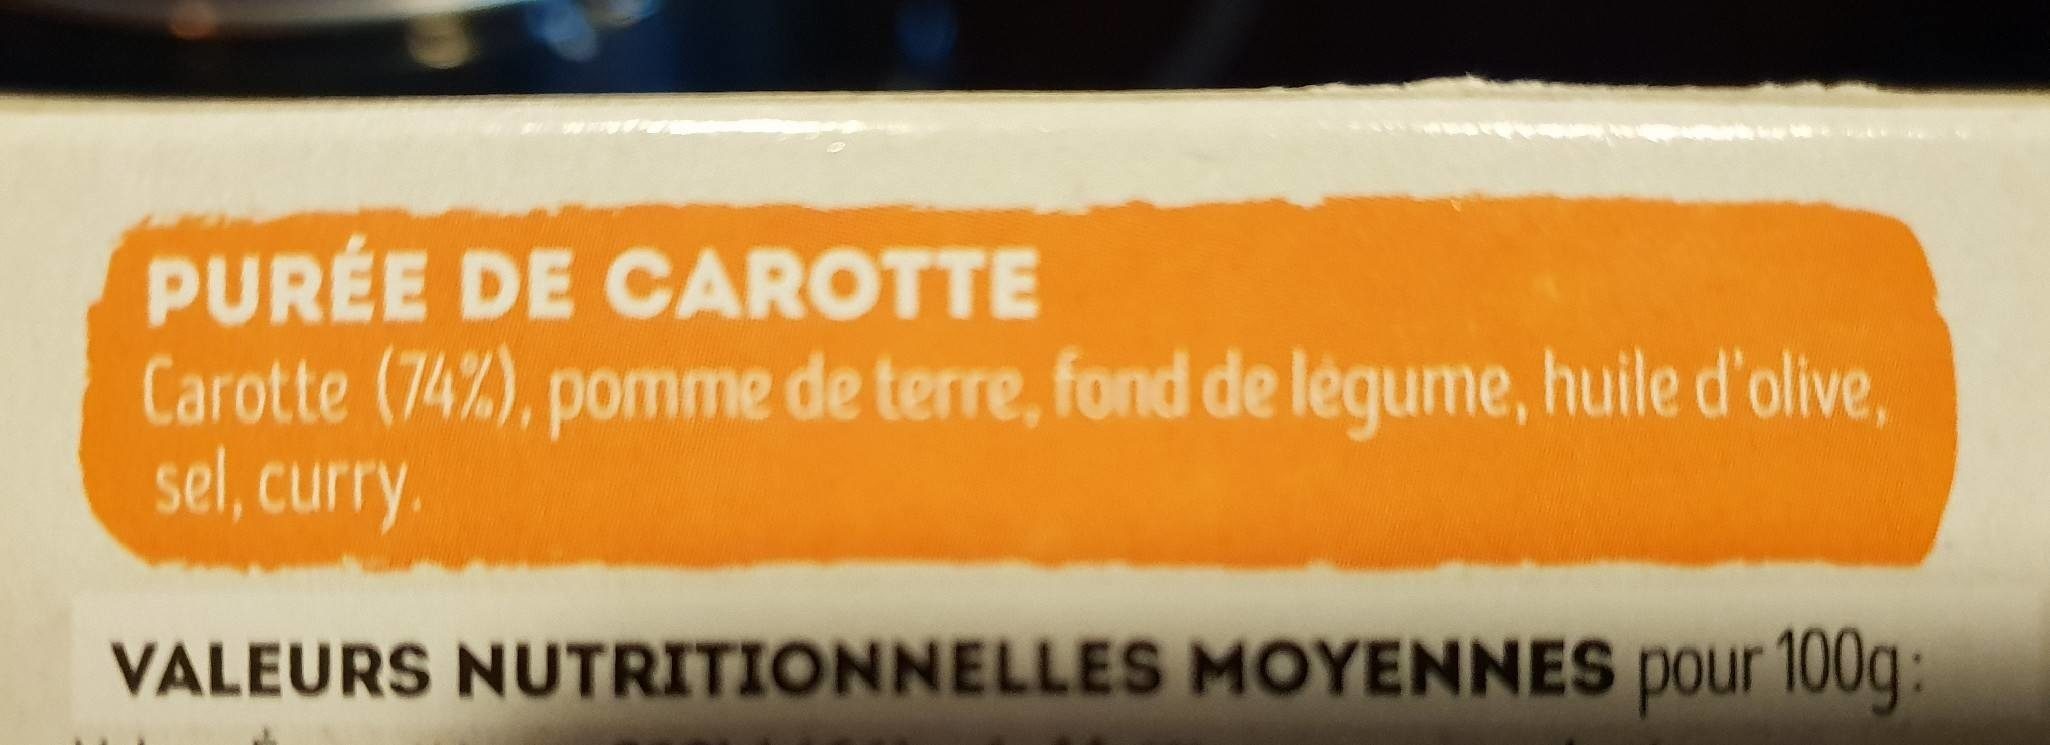 Purée de carottes - Ingredients - fr